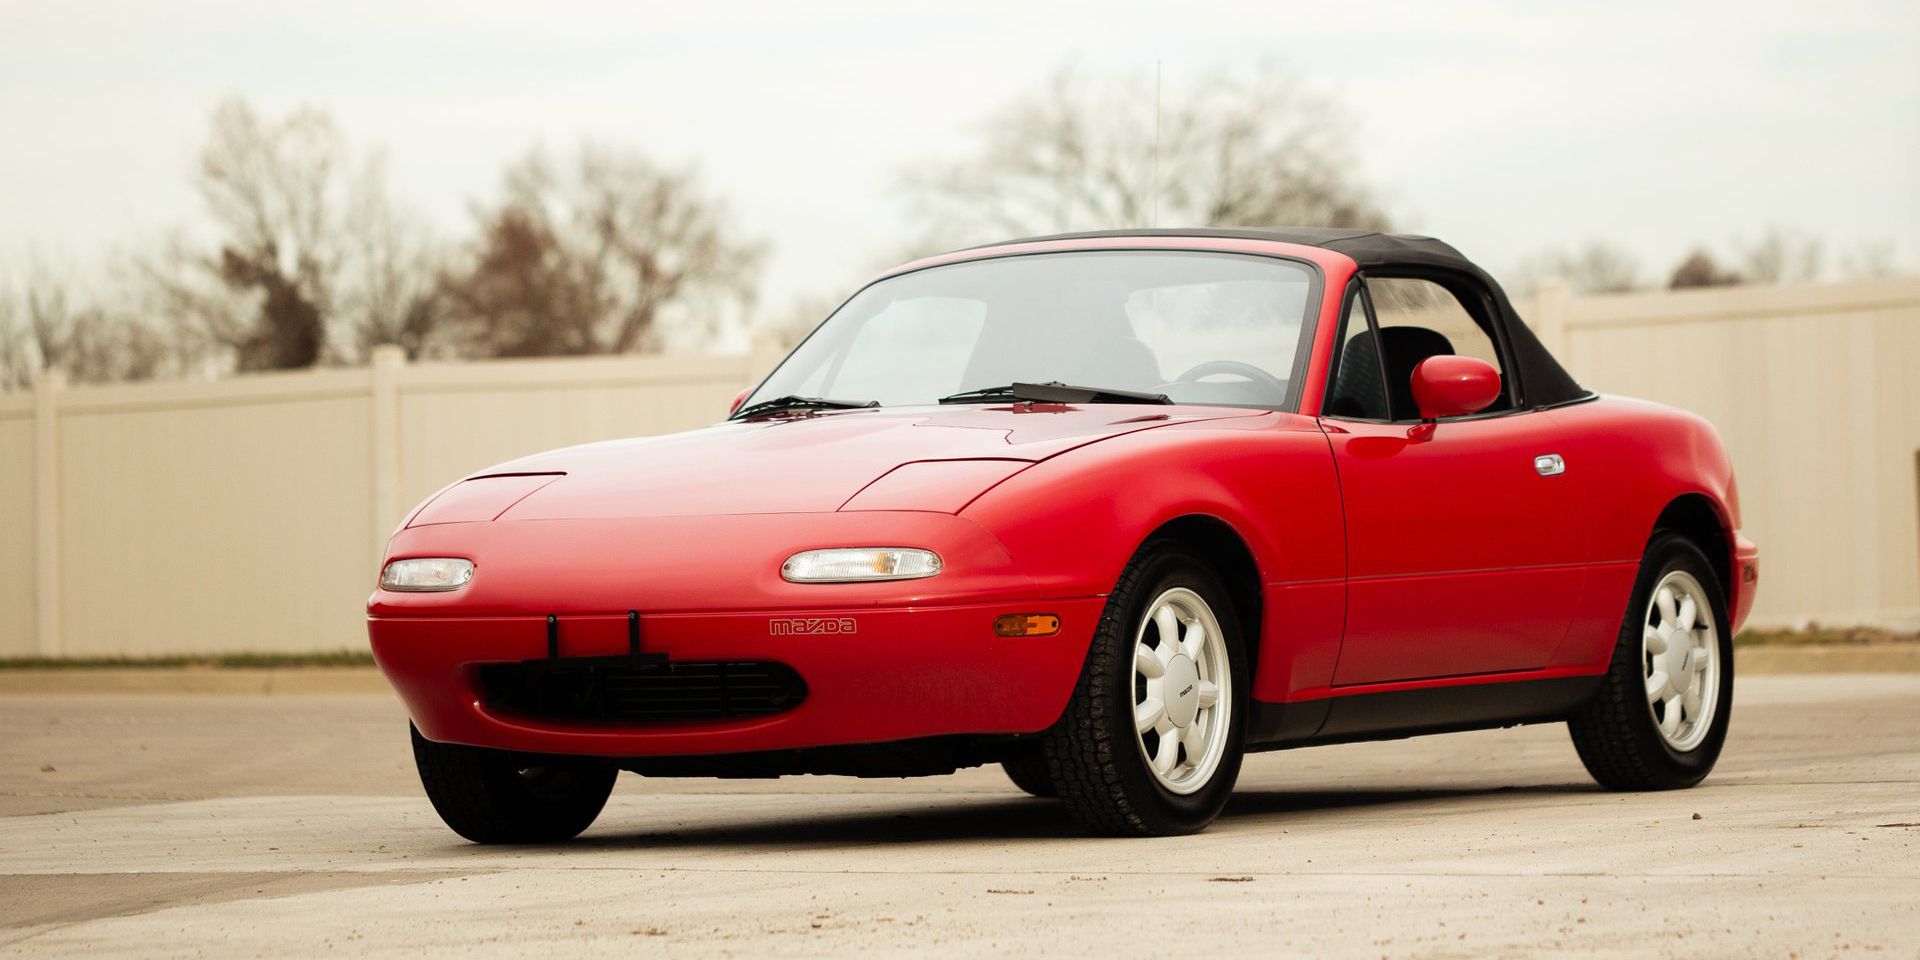 Praktycznie fabrycznie nowa Mazda Miata z 1990 do kupienia